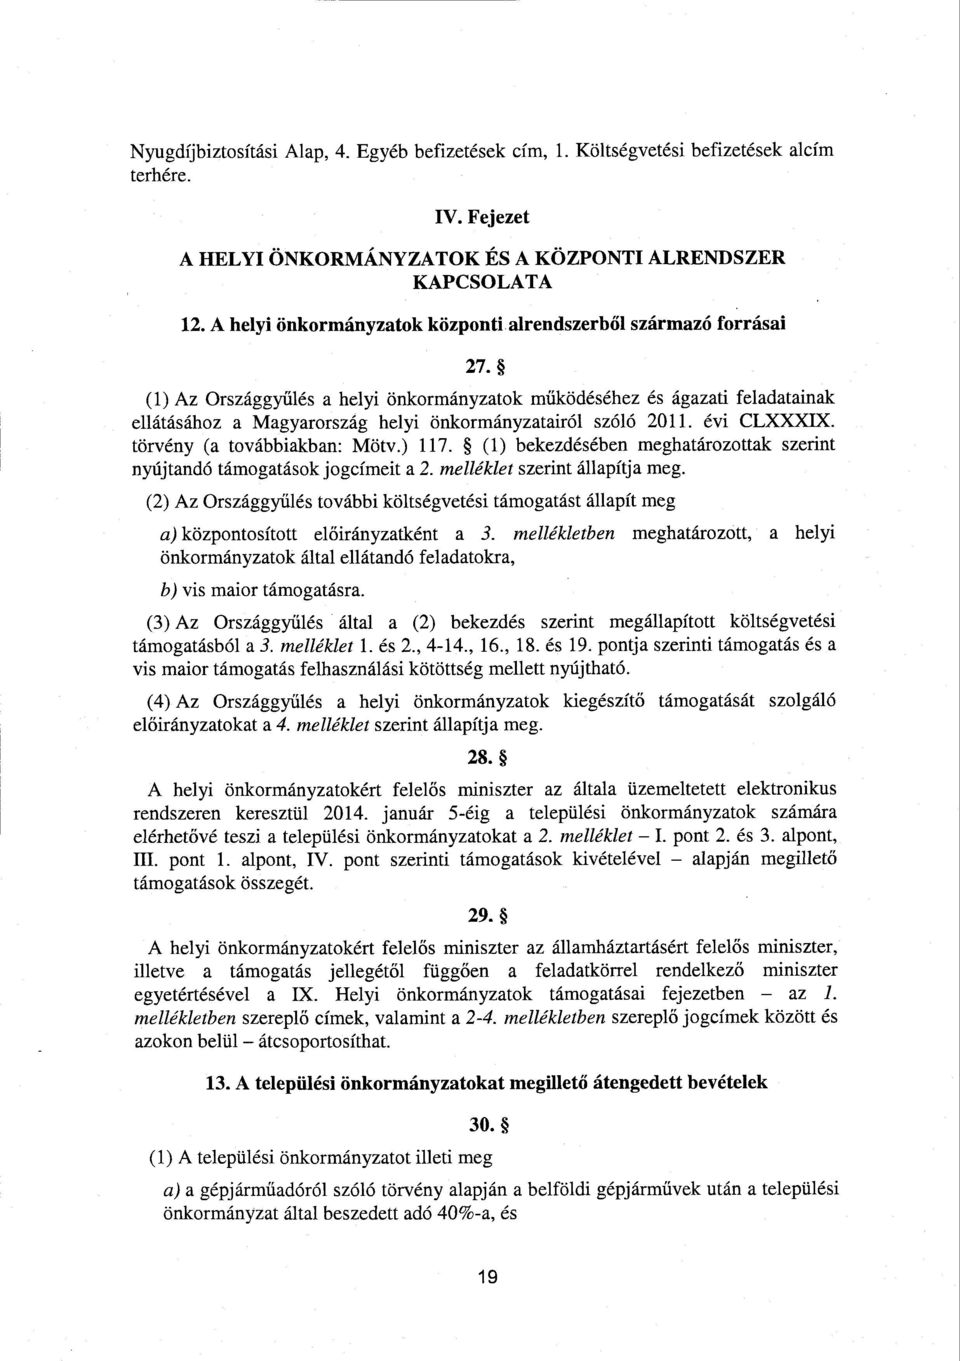 (1) Az Országgyűlés а helyi önkormányzatok működéséhez és ágazati feladatainak ellátásához а Magyarország helyi önkormányzatairól szóló 2011. évi CLXXXIX. törvény (a továbbiakban: Mötv.) 117.